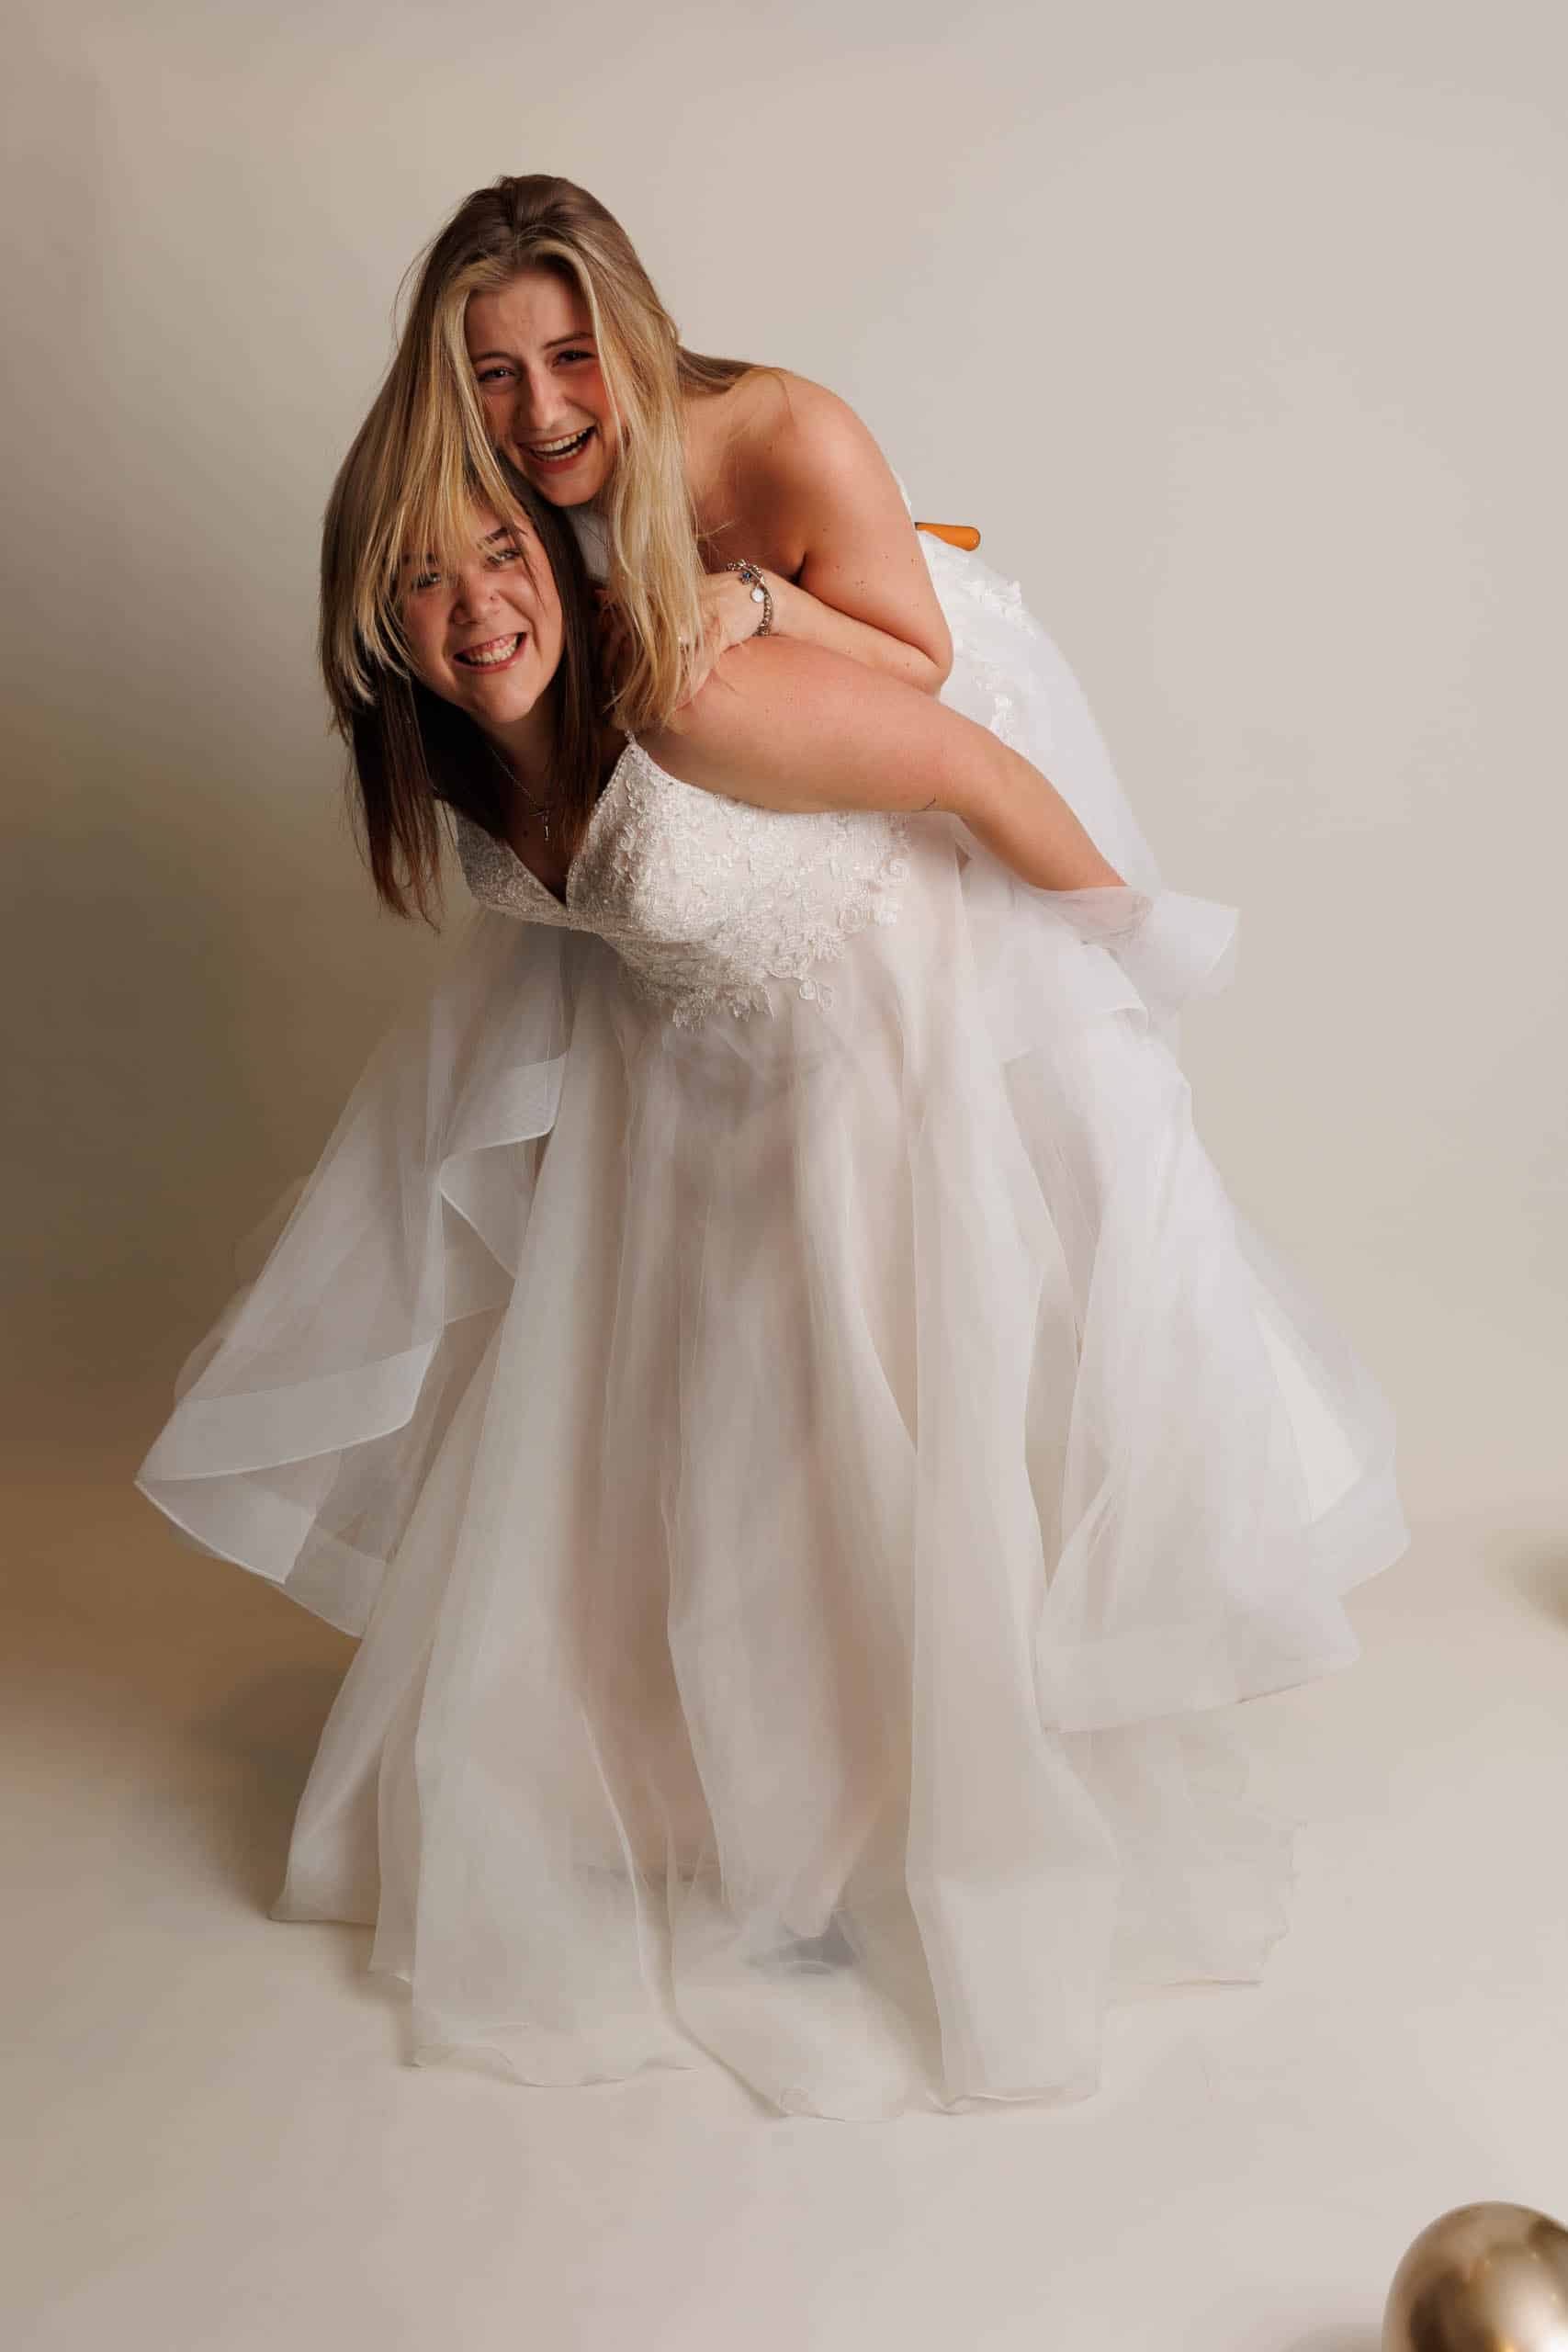 Beschrijving: Twee vrouwen in trouwjurken voor een foto als grap.